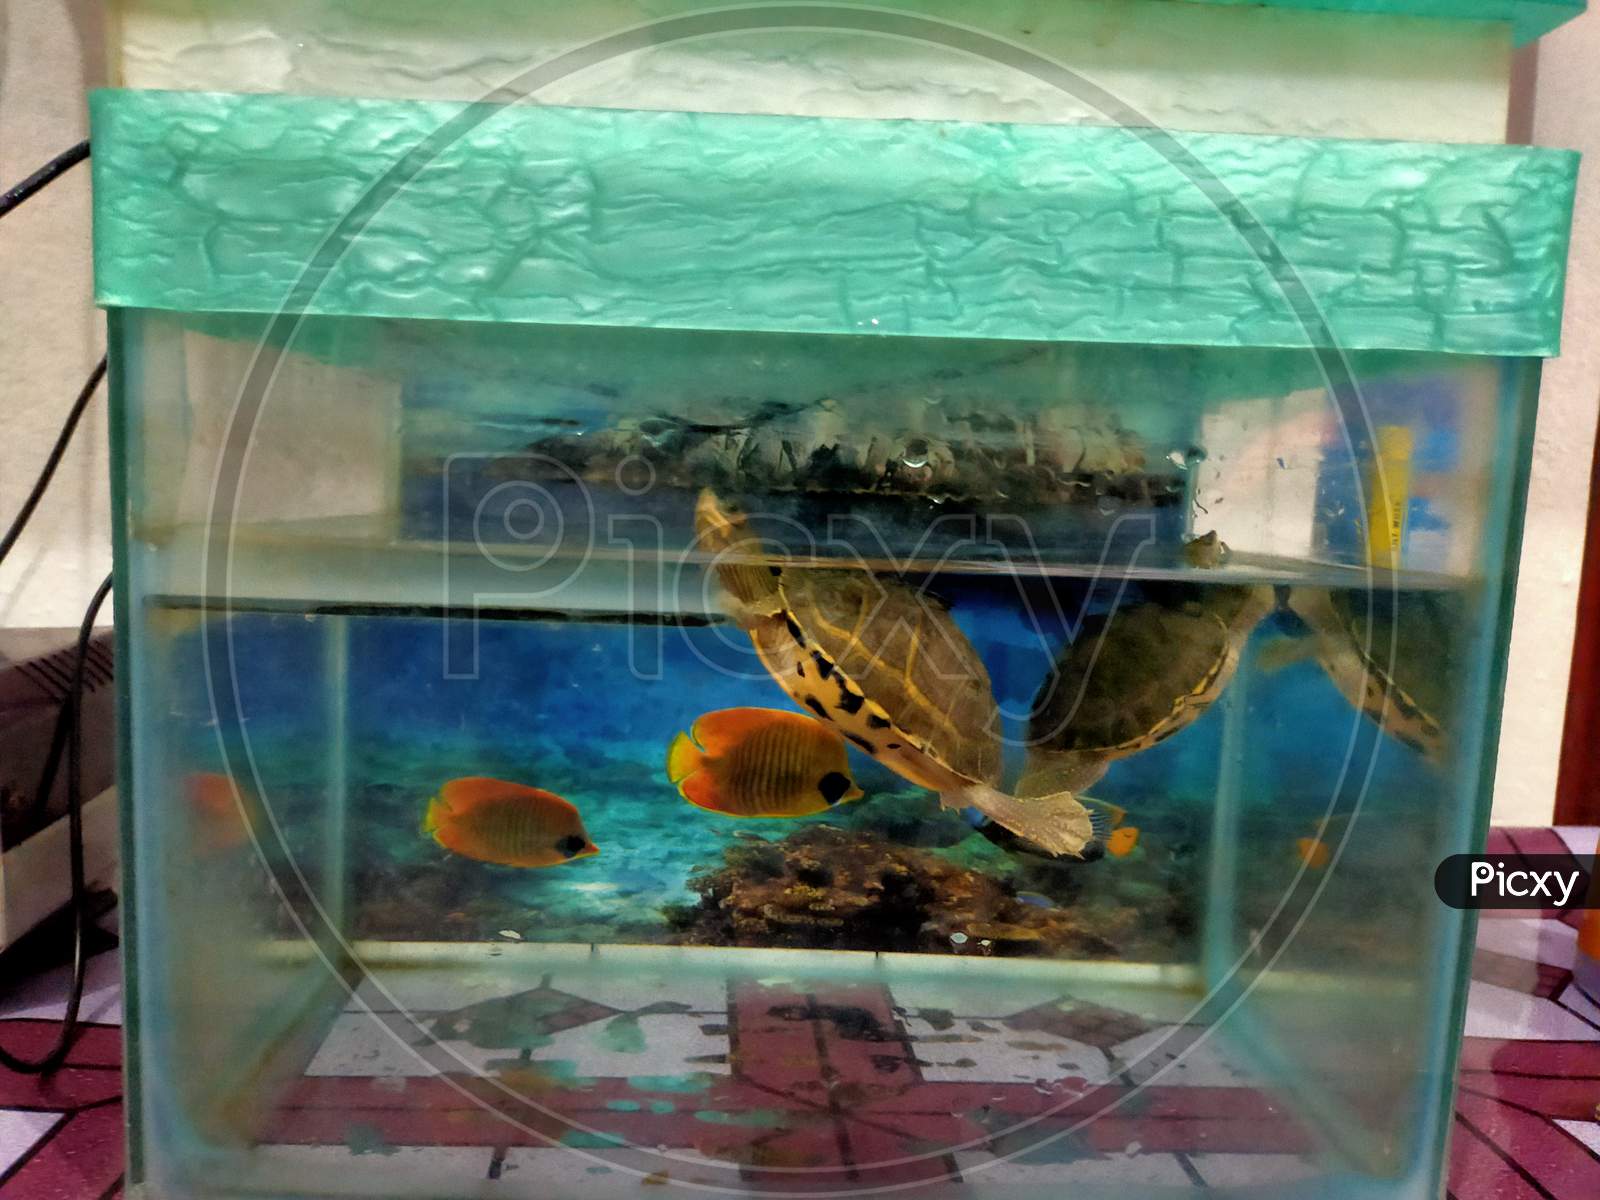 Turtle in the aquarium